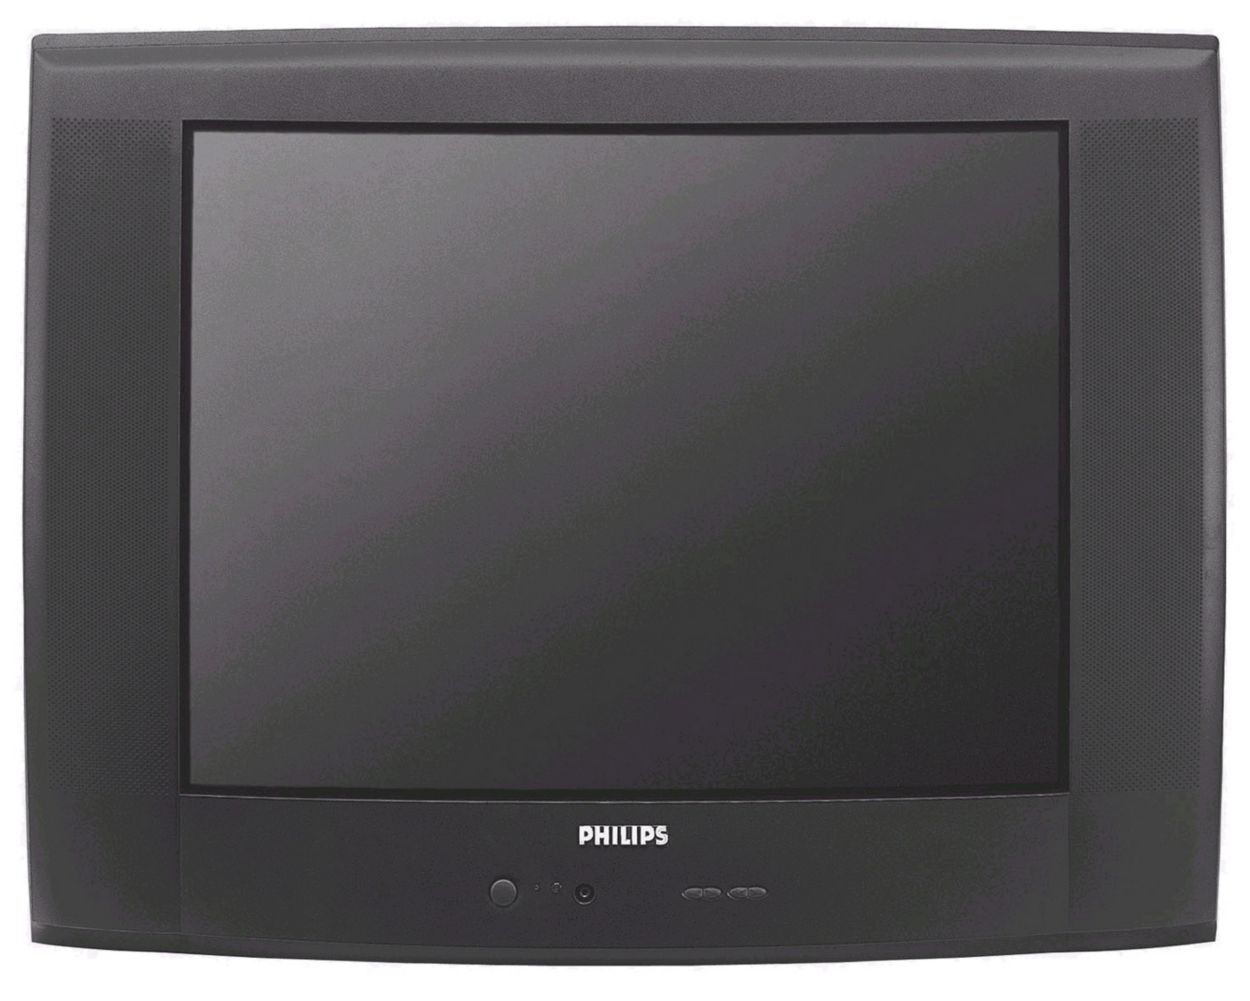 Телевизор 25 лет. Телевизор Philips 25pt4475 25". Телевизор Philips 28pt4104/58. Телевизор Philips 25 pt. Телевизор Philips 28pw5408 28".